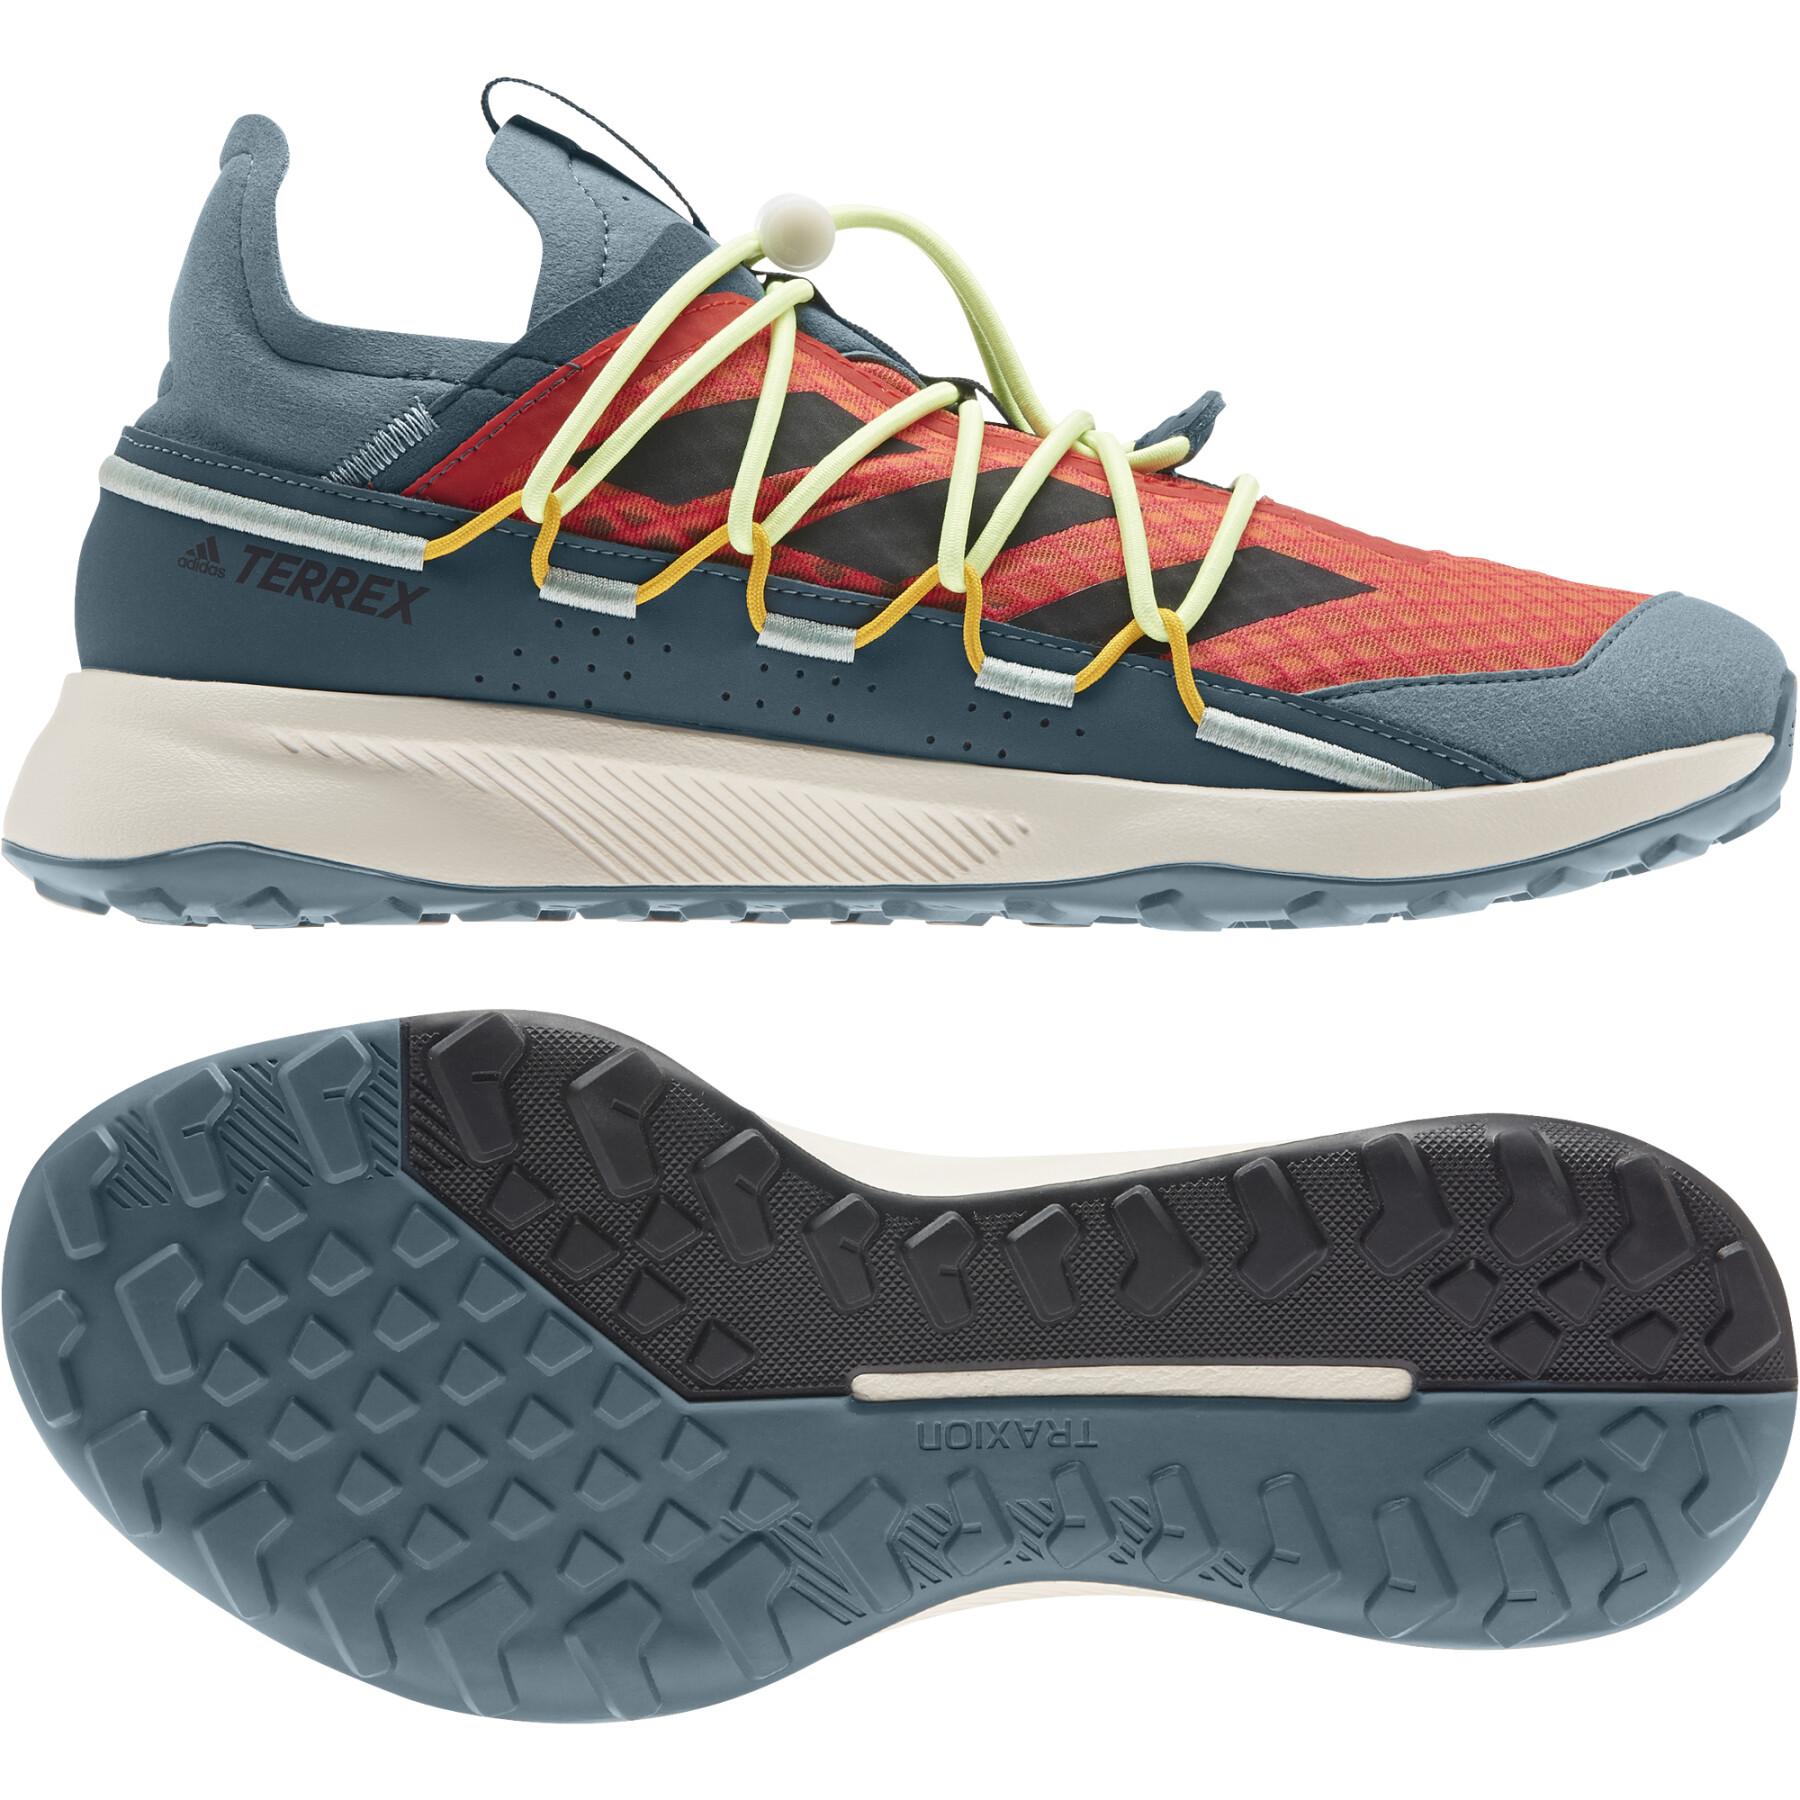 Chaussures adidas Terrex Voyager 21